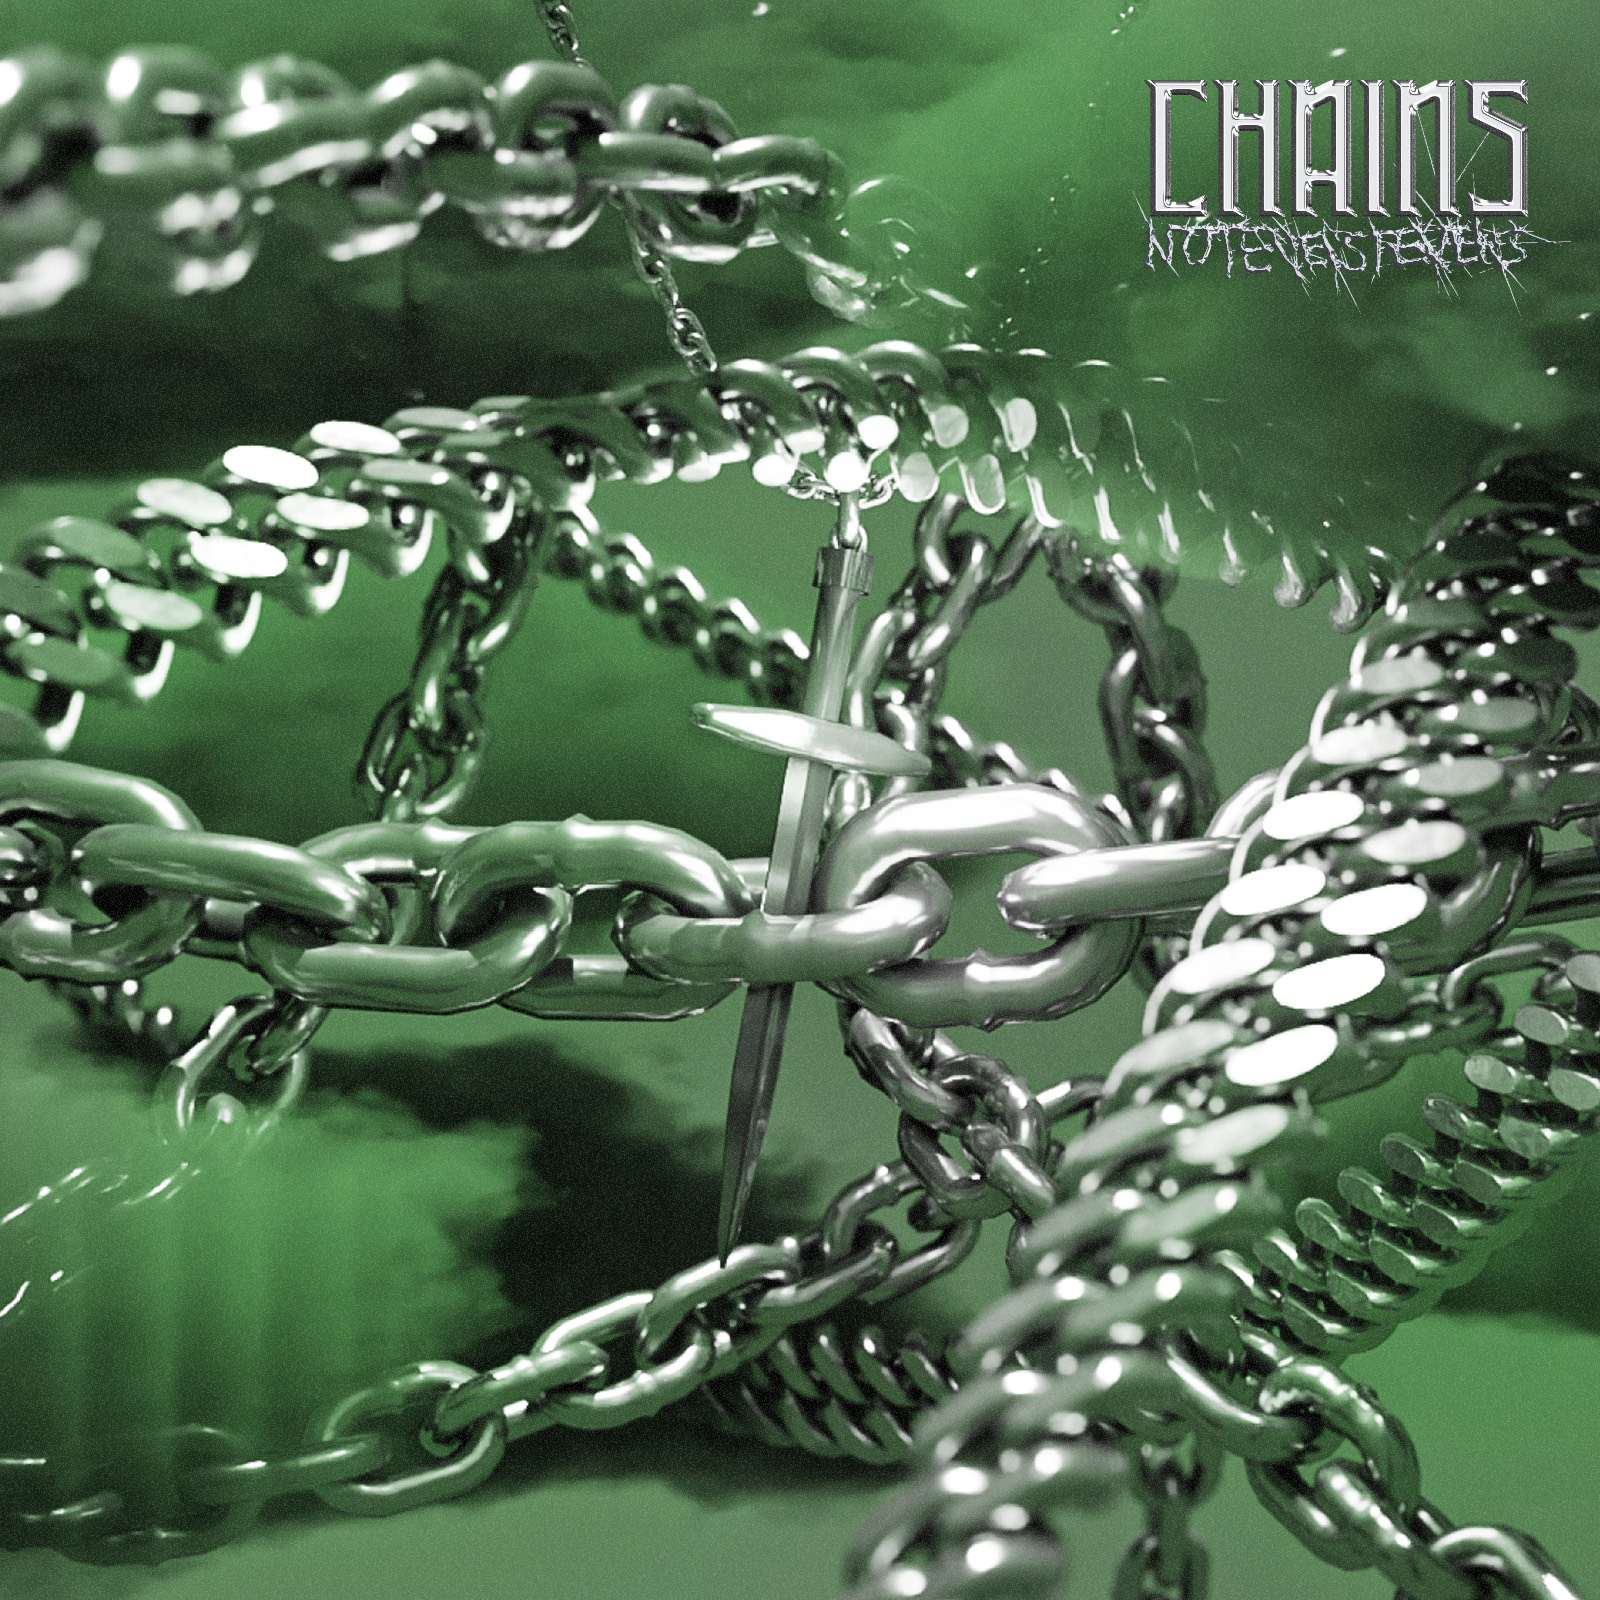 Chains notevenstevens